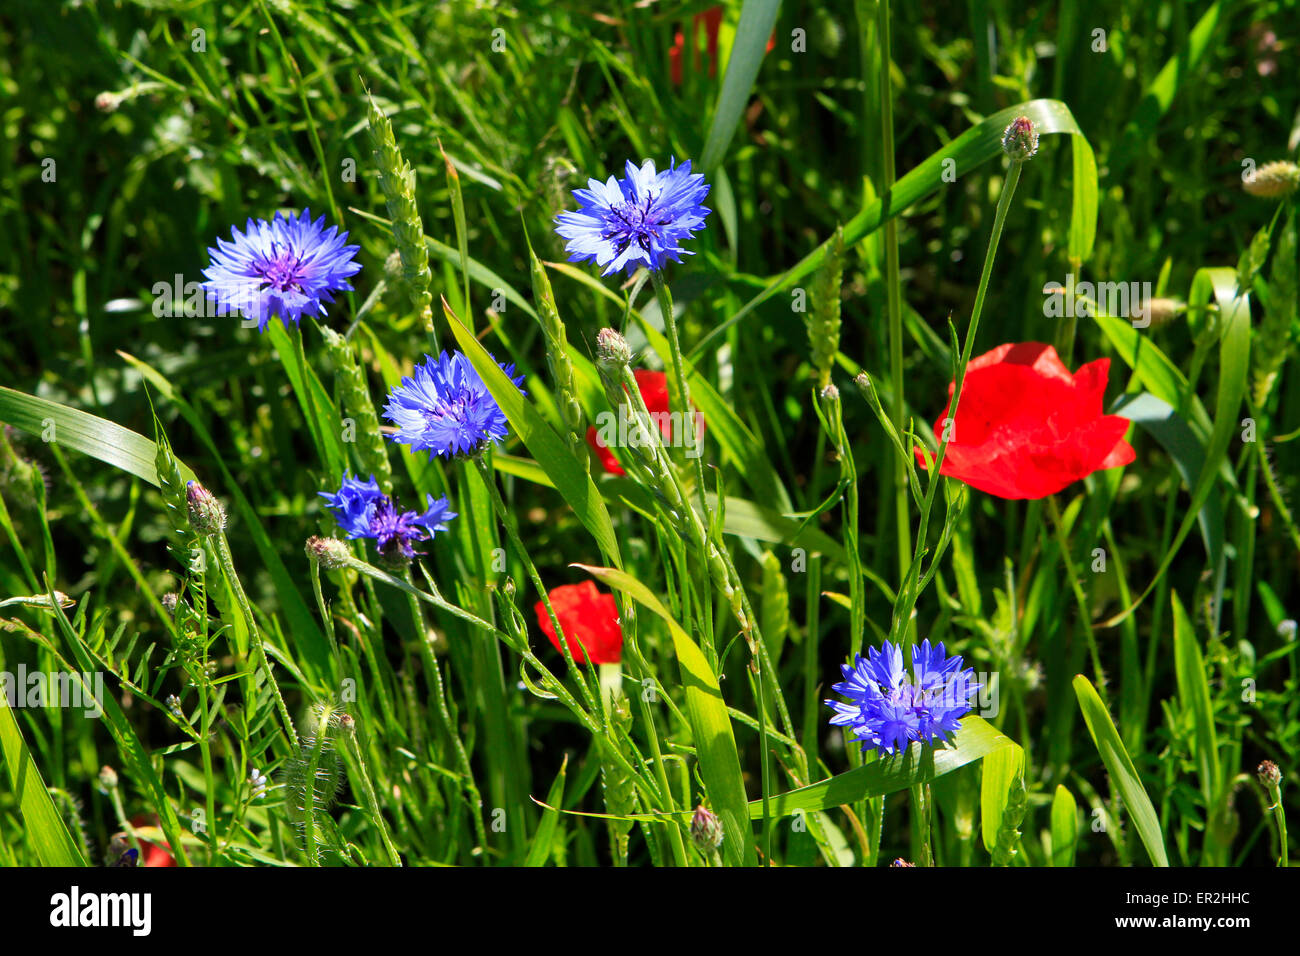 Buntes Getreidefeld mit Mohnblumen (Papaver rhoeas) und Kornblumen (Centaurea cyanus), Insel Ruegen, Mecklenburg-Vorpommern, Ost Stock Photo